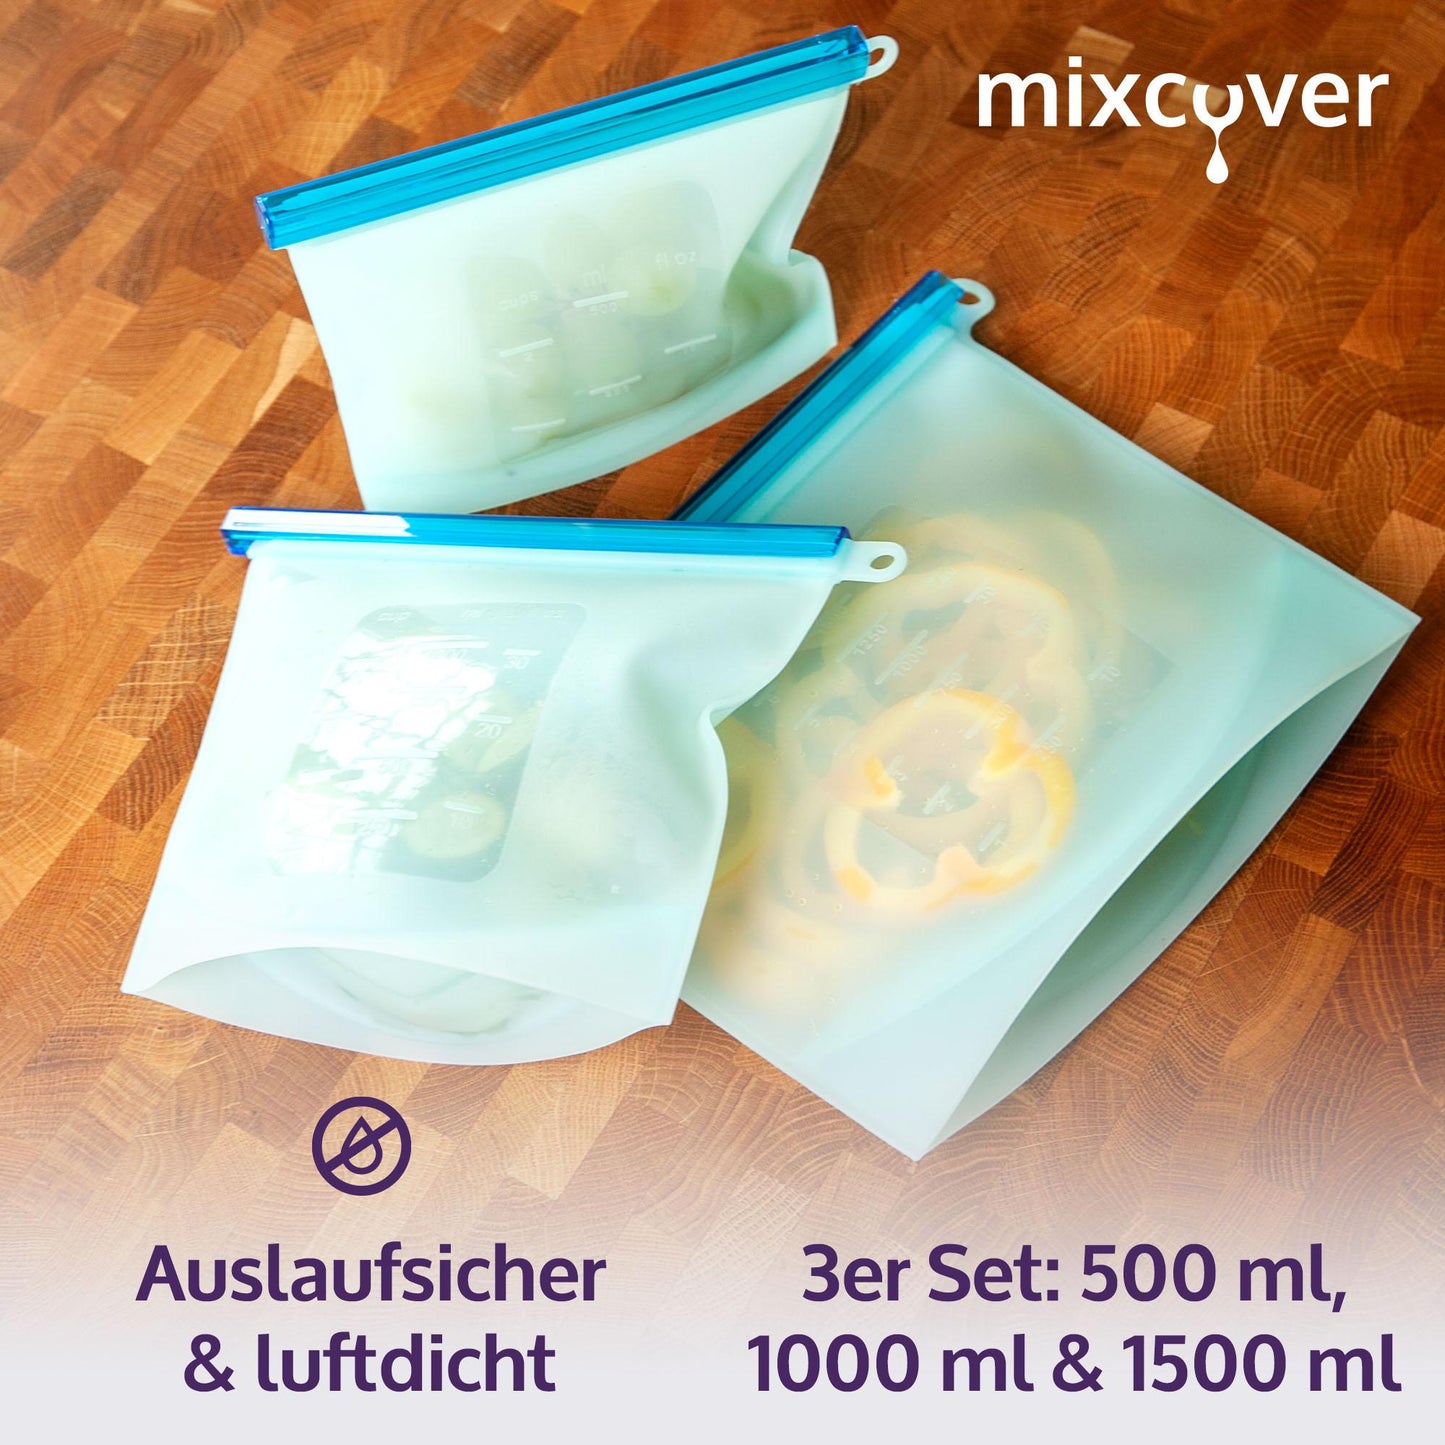 mixcover wiederverwendbare Frischhaltebeutel aus Silikon mit Verschluss, auslaufsicher, nachhaltig, BPA-frei, 3er Set, 500ml 1000ml 1500ml - Mixcover - Mixcover